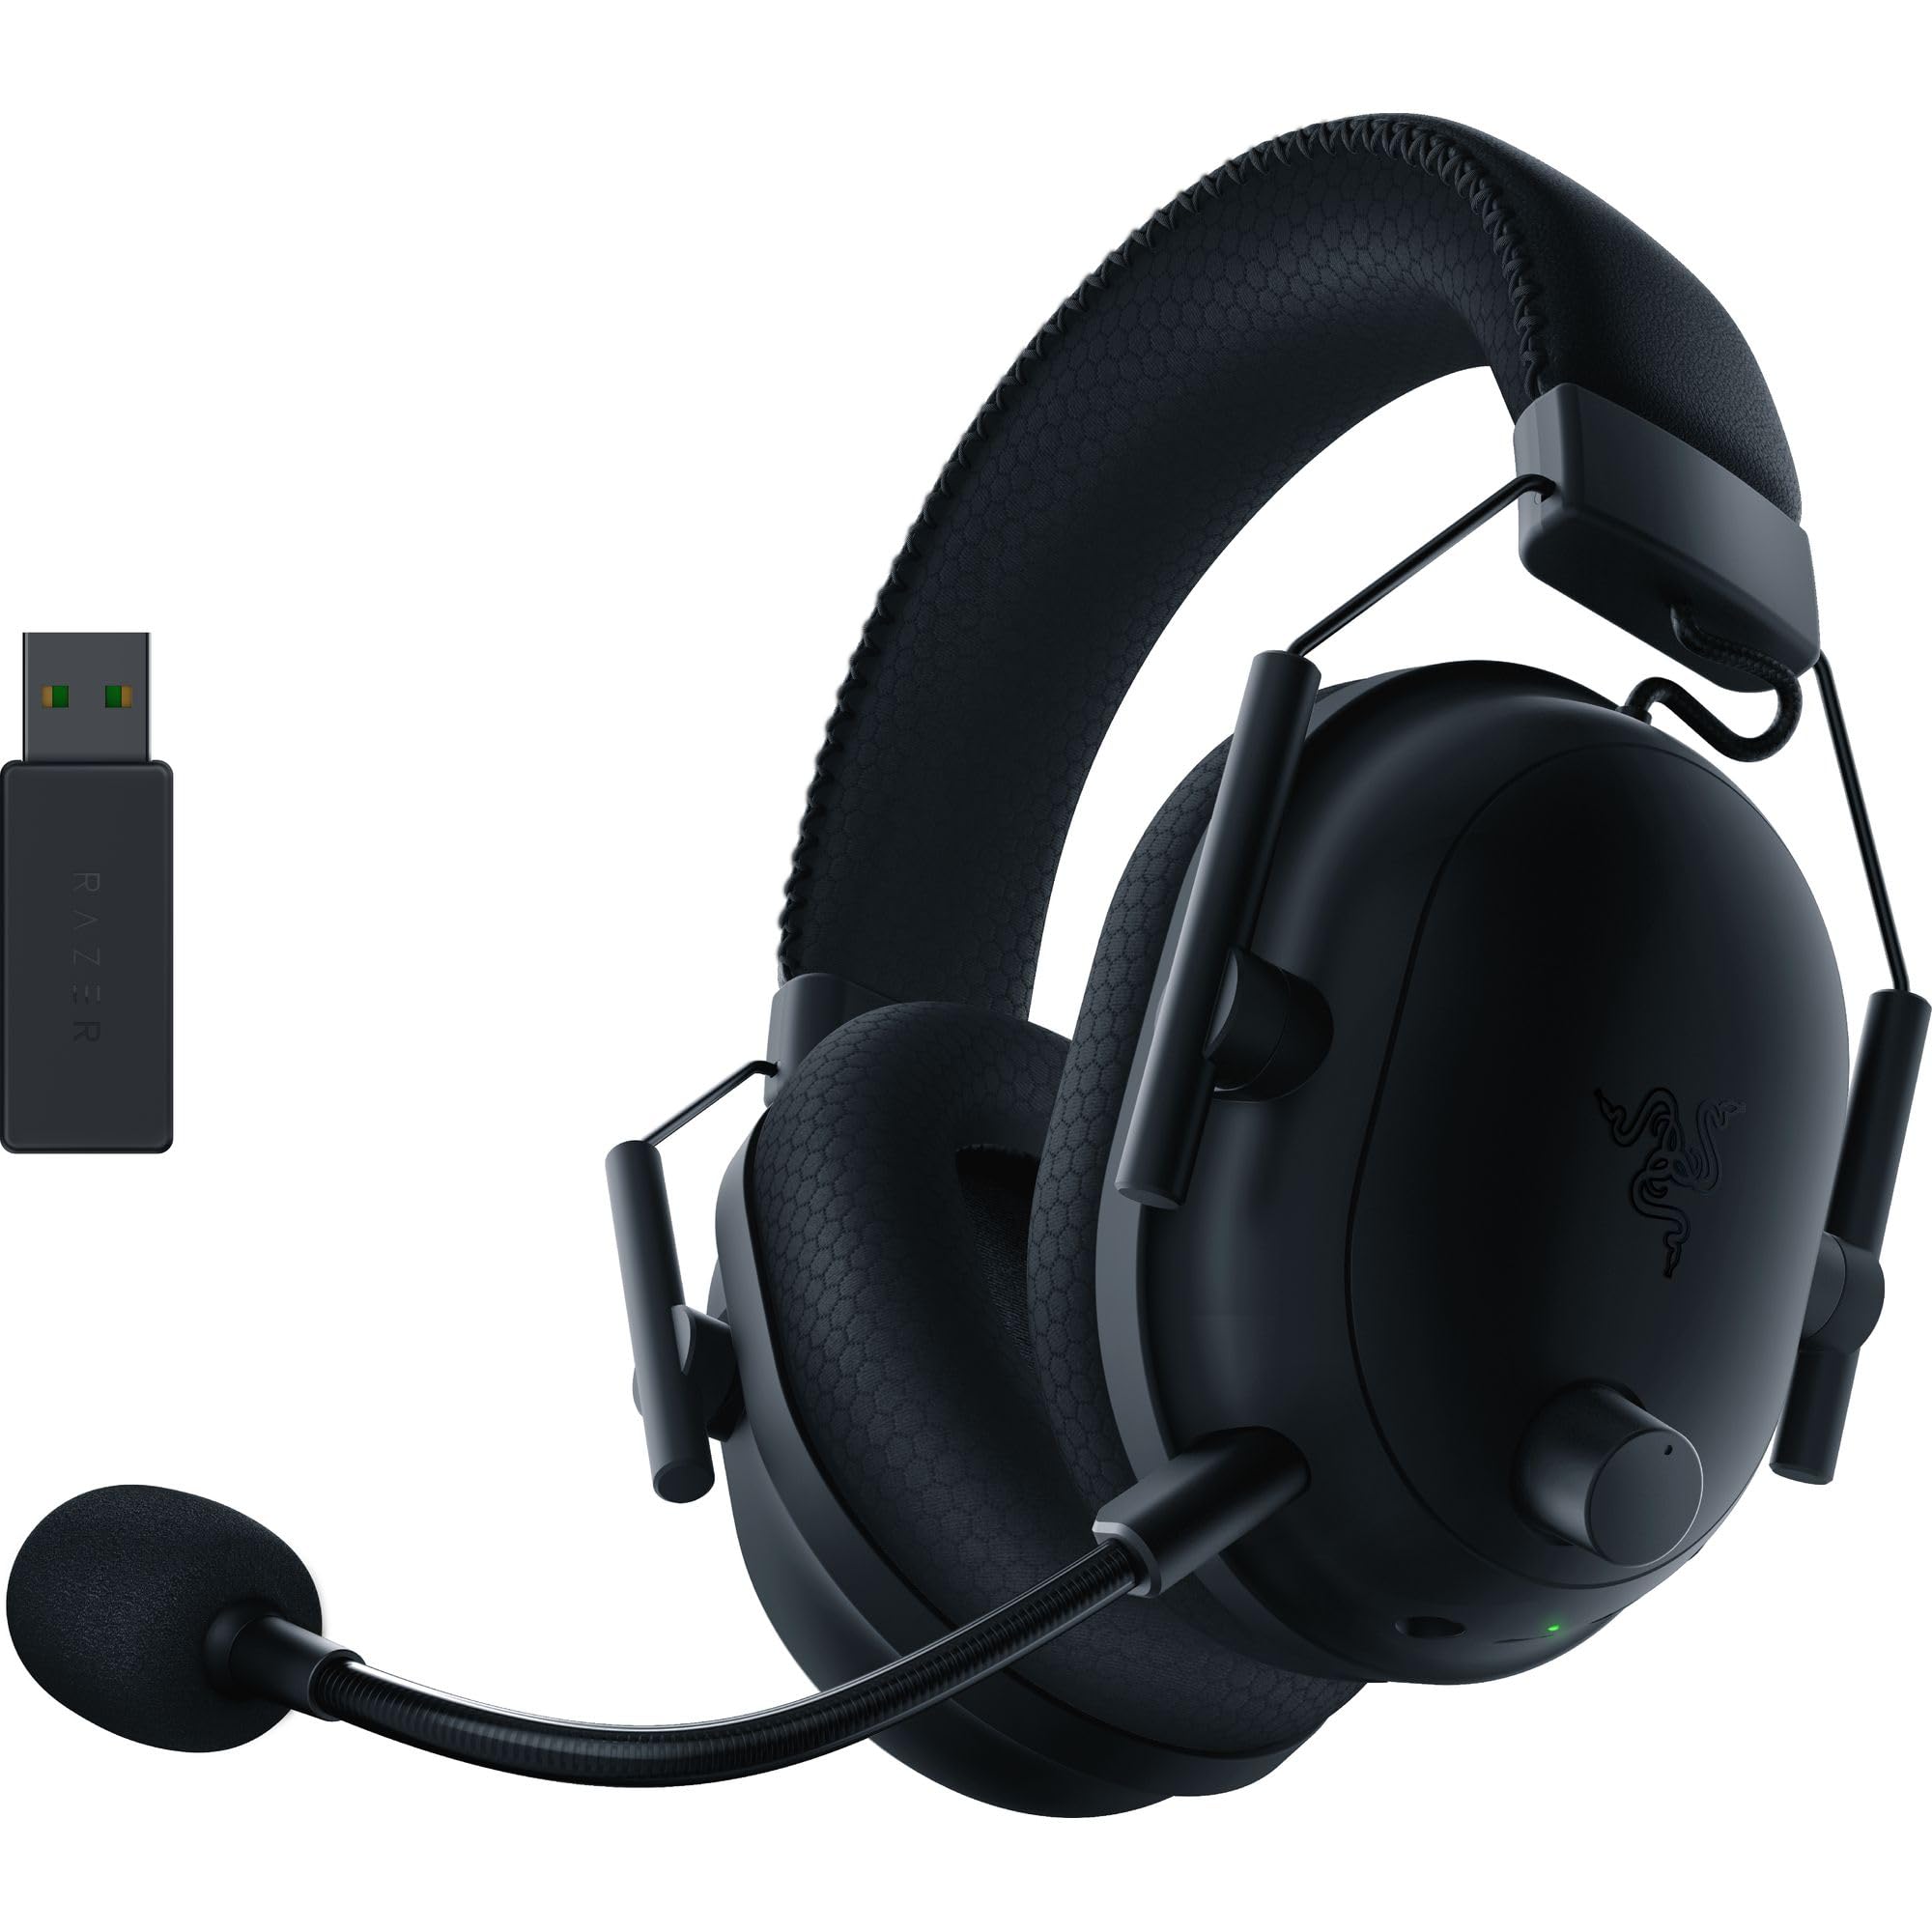 Razer BlackShark V2 Pro Wireless Gaming Headset: $98.72